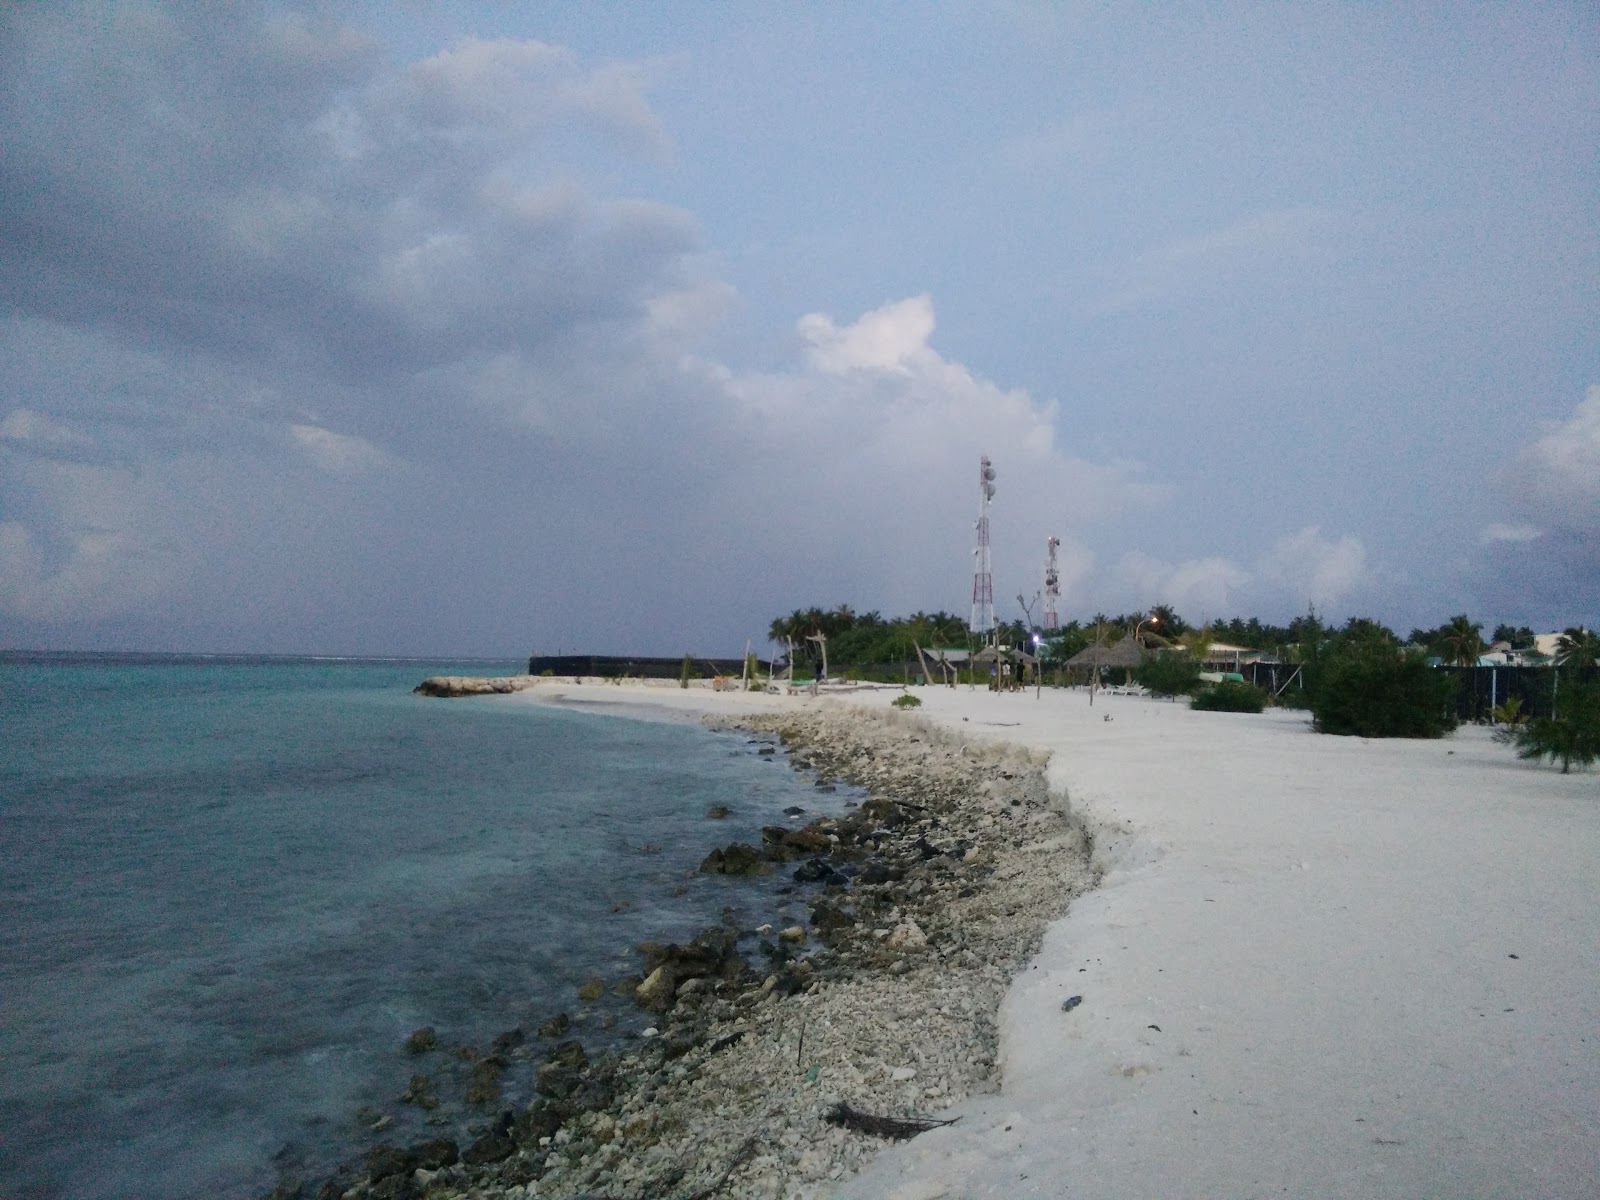 Zdjęcie Gaafaru Beach - popularne miejsce wśród znawców relaksu